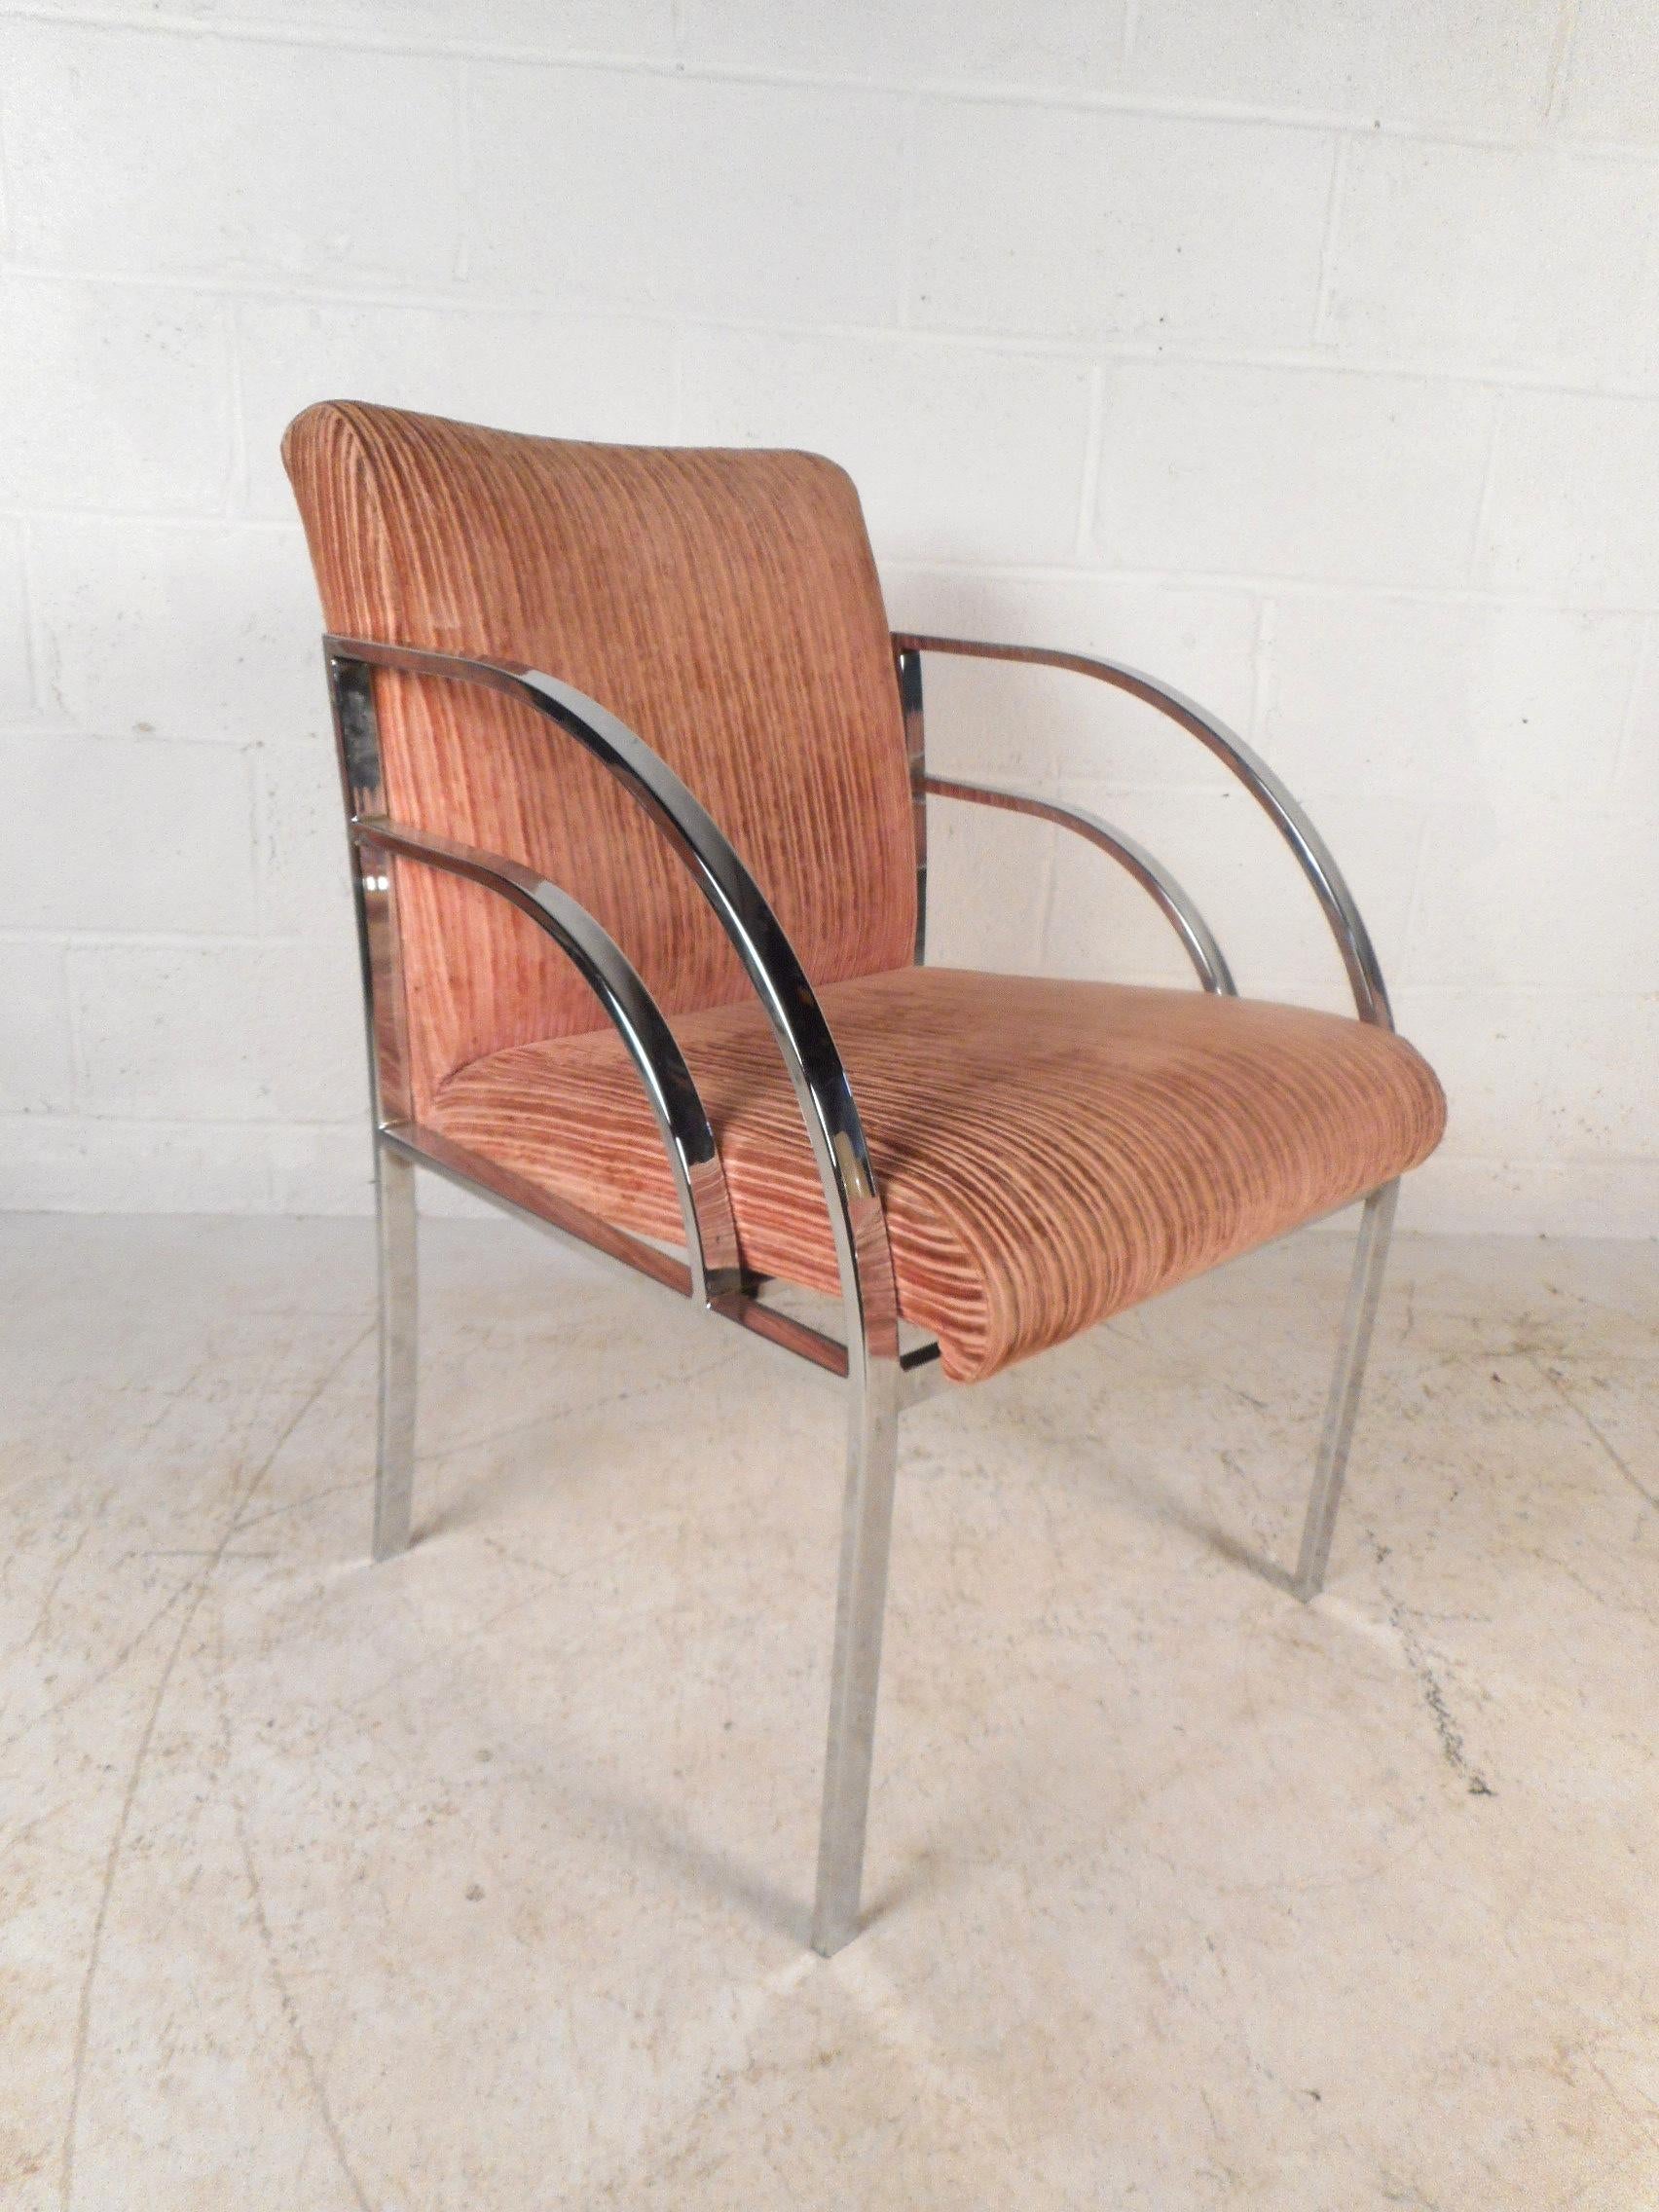 Ce magnifique ensemble de quatre chaises modernes vintage est doté d'accoudoirs chromés arqués et d'un joli rembourrage rose. Le design épuré se caractérise par un lourd cadre chromé à barre plate et un tissu texturé en velours côtelé qui recouvre